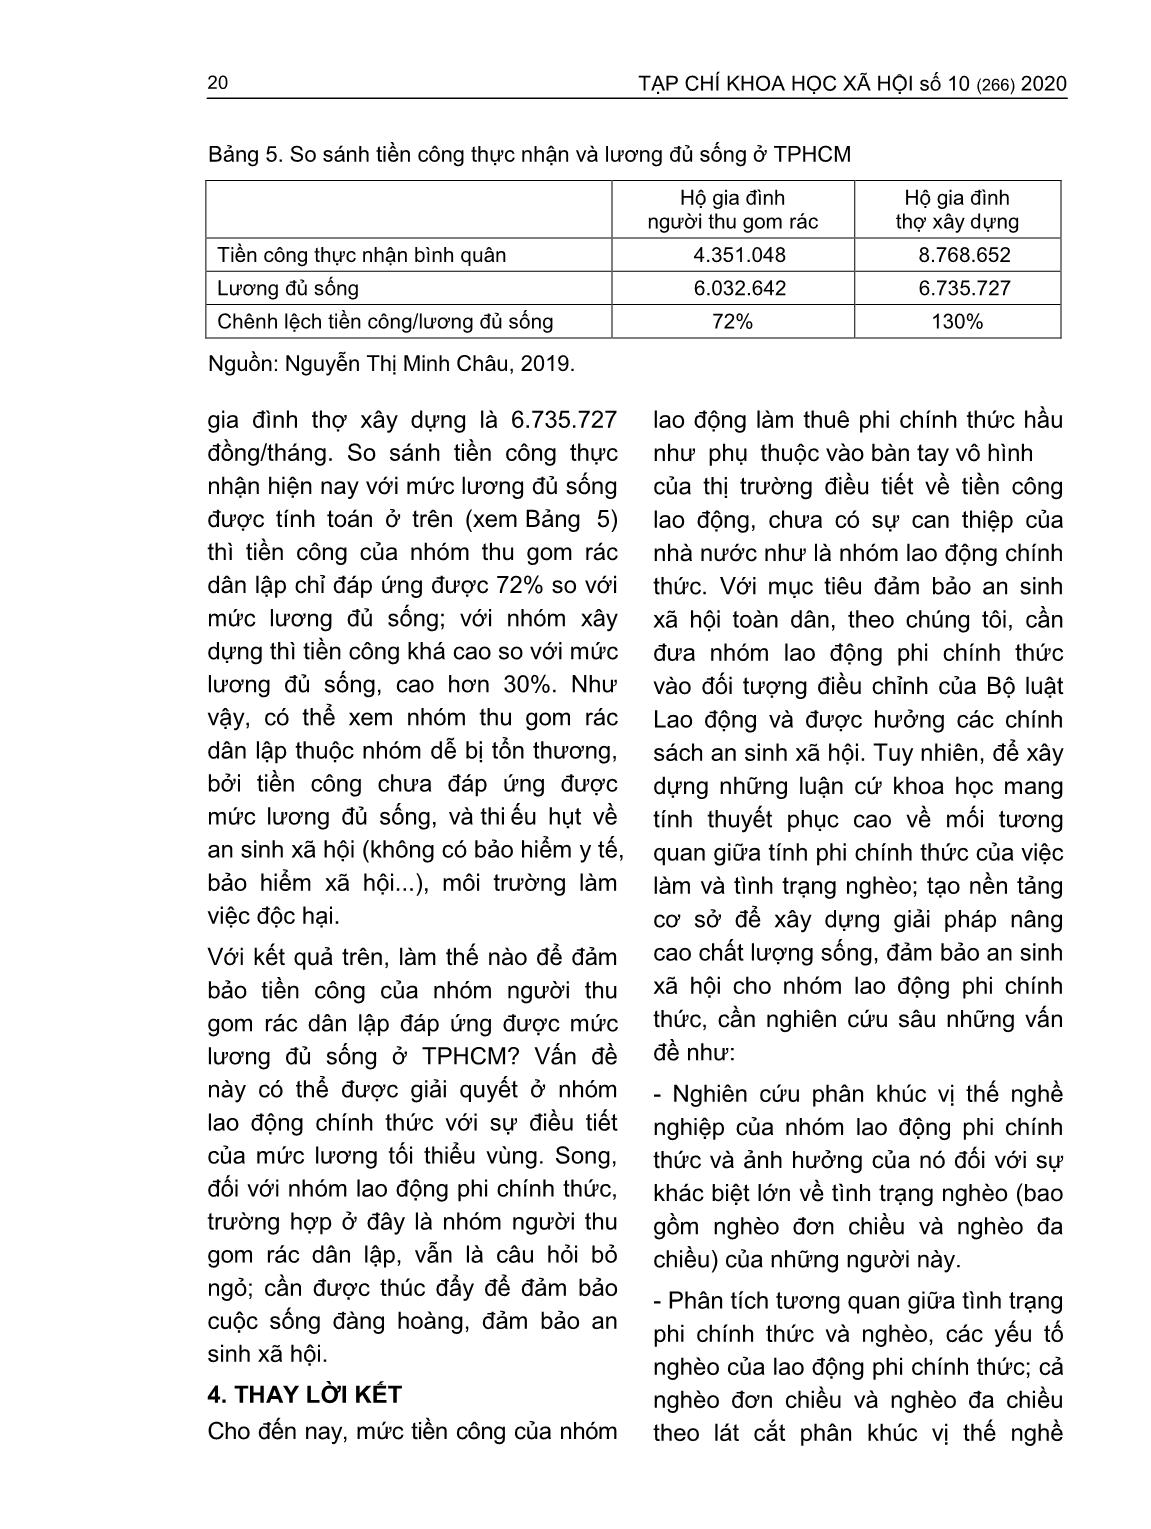 Tiền công của người lao động làm thuê phi chính thức - So sánh với tiền lương tối thiểu vùng và lương đủ sống (Trường hợp người thu gom rác và thợ xây dựng tại thành phố Hồ Chí Minh) trang 9